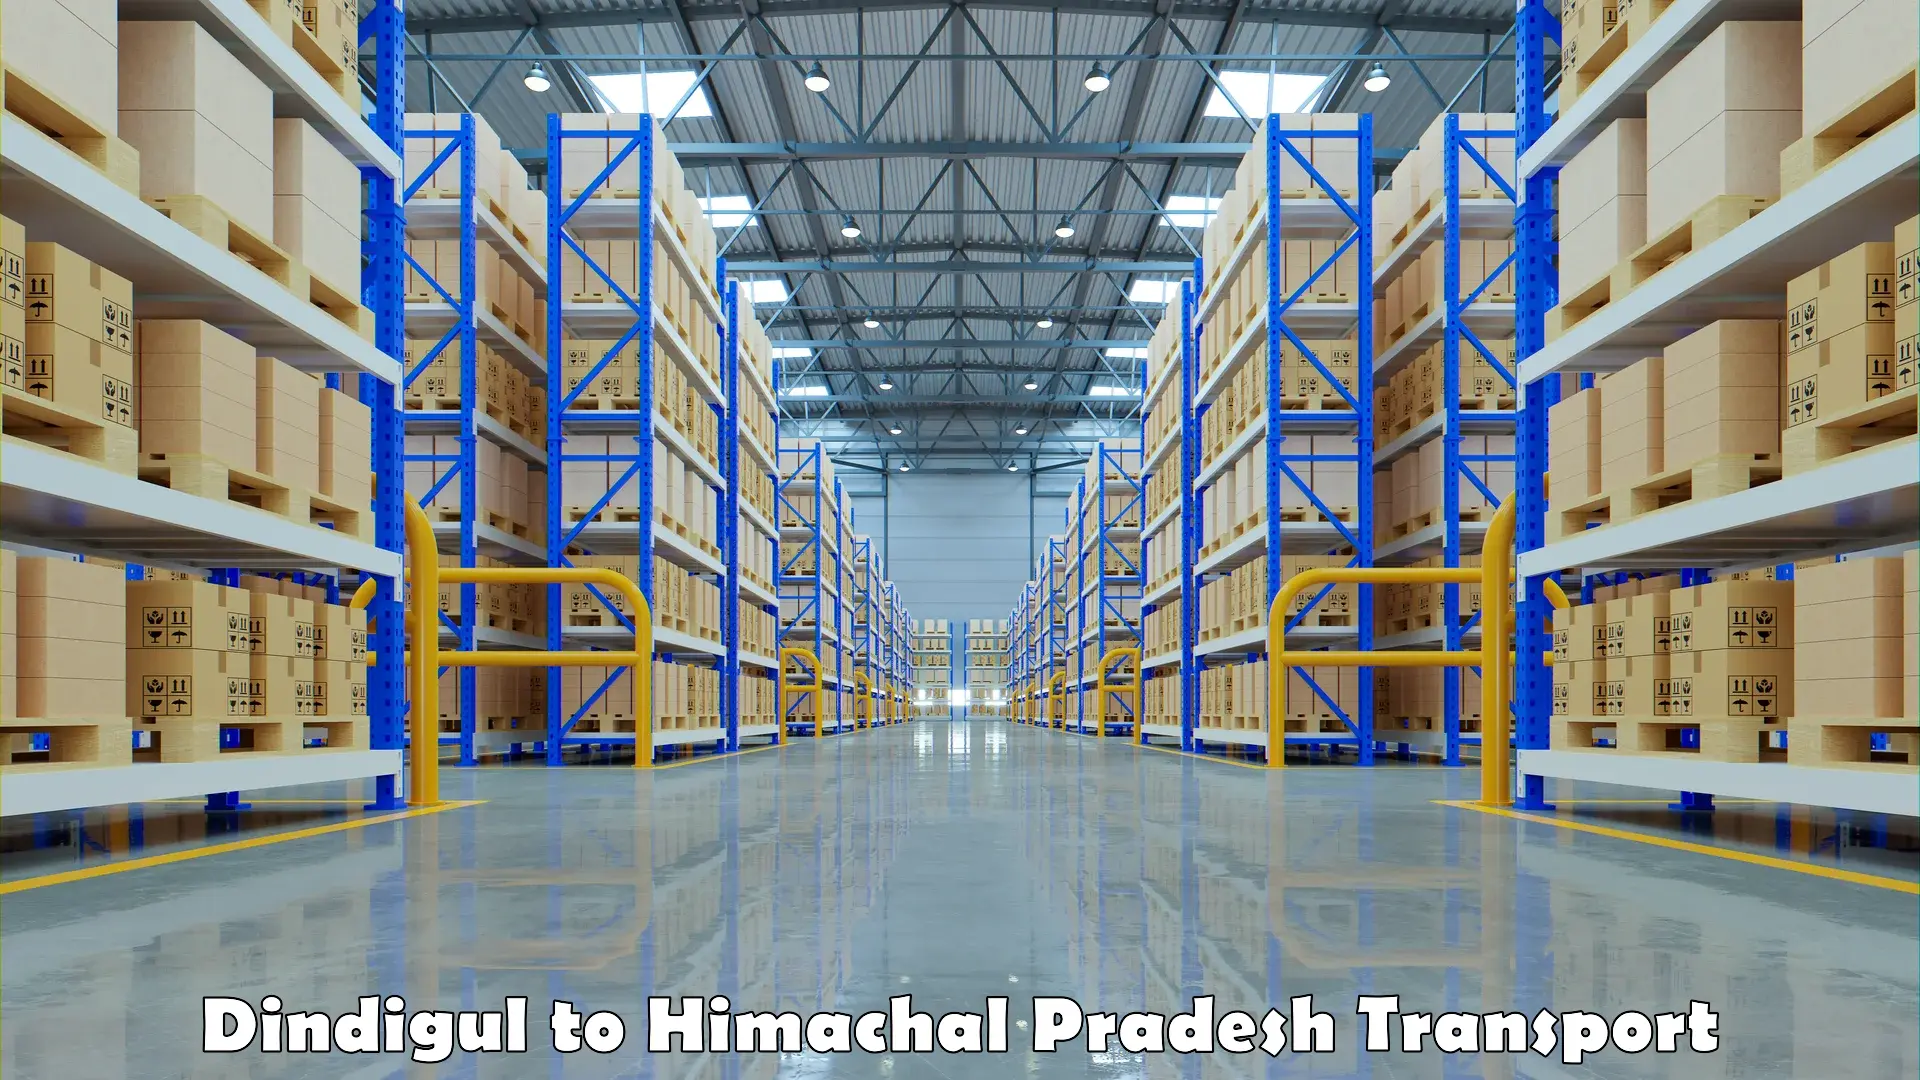 Parcel transport services Dindigul to Patlikuhal